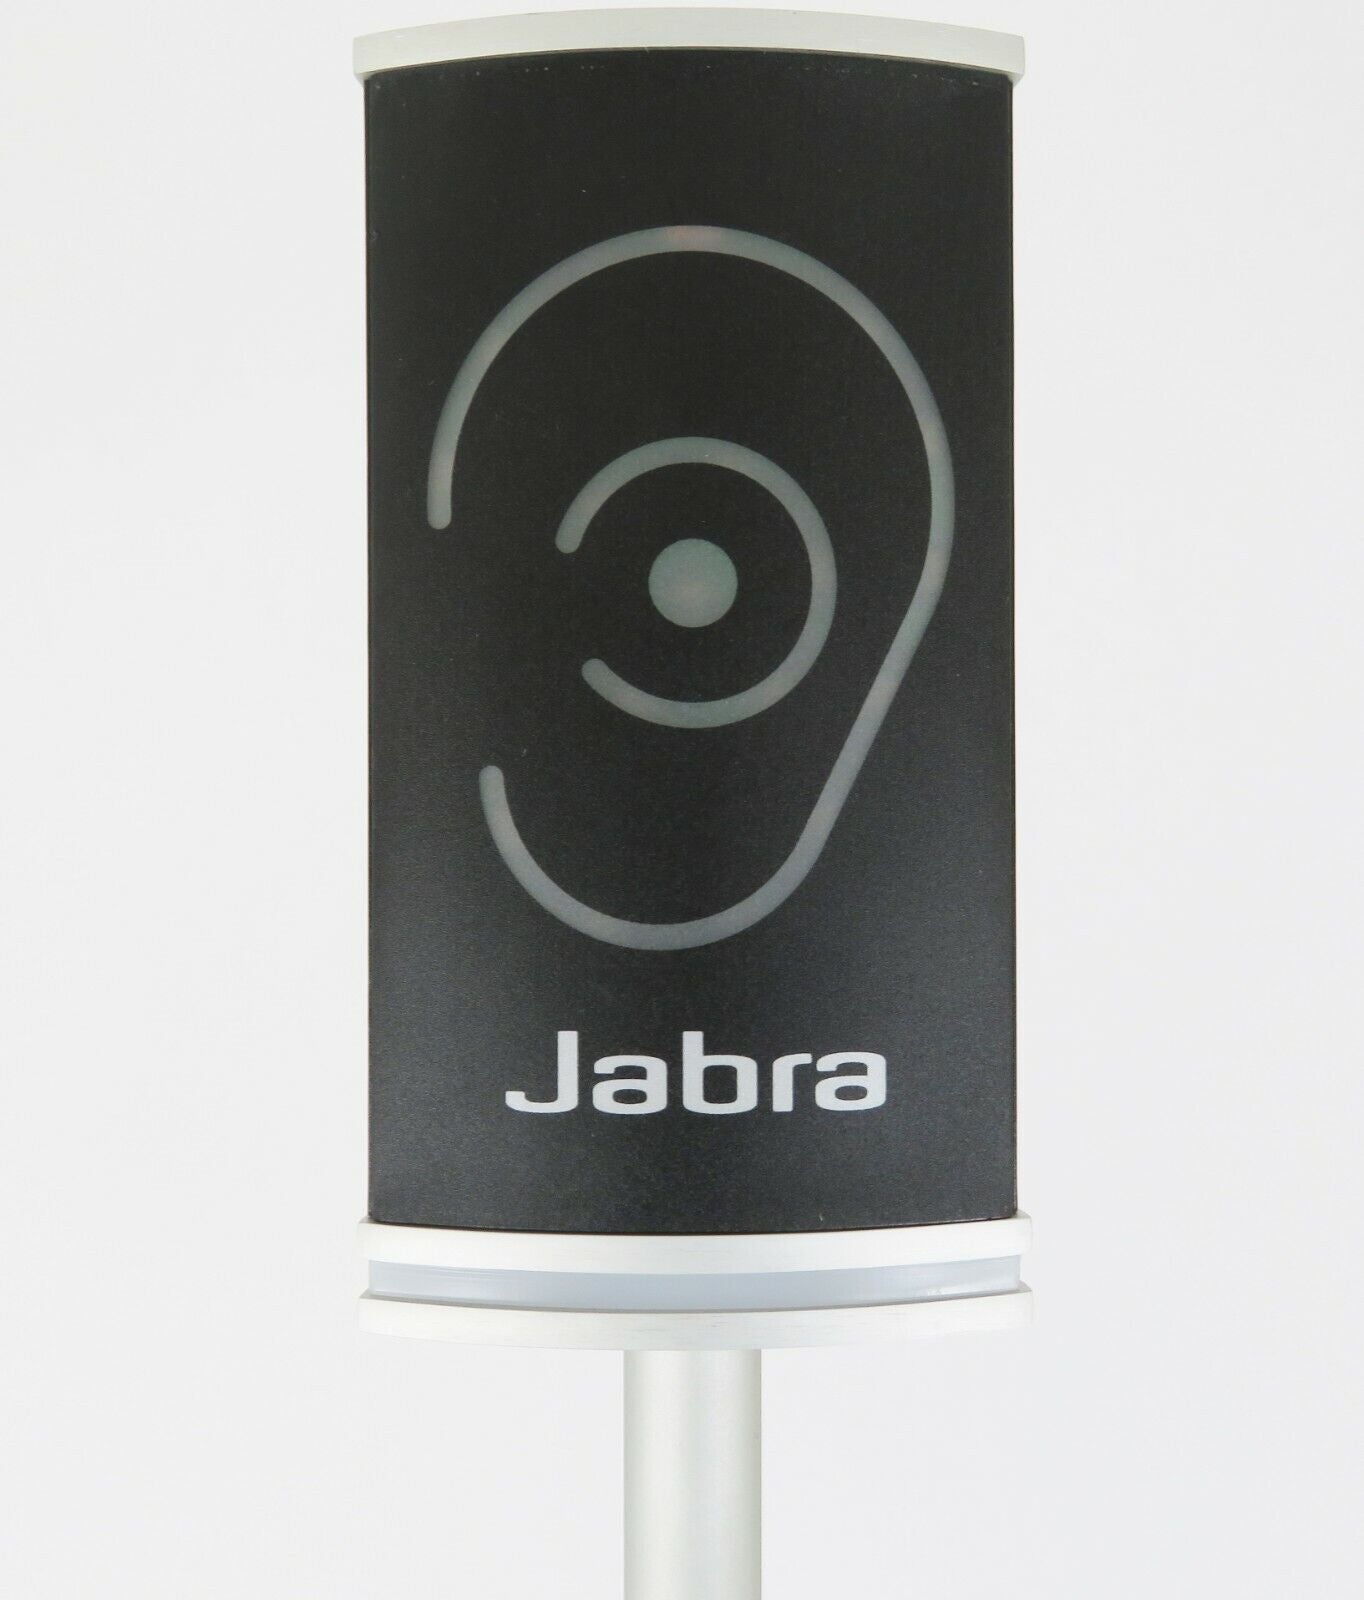 Refurbished Jabra Noise Guide 14207-41